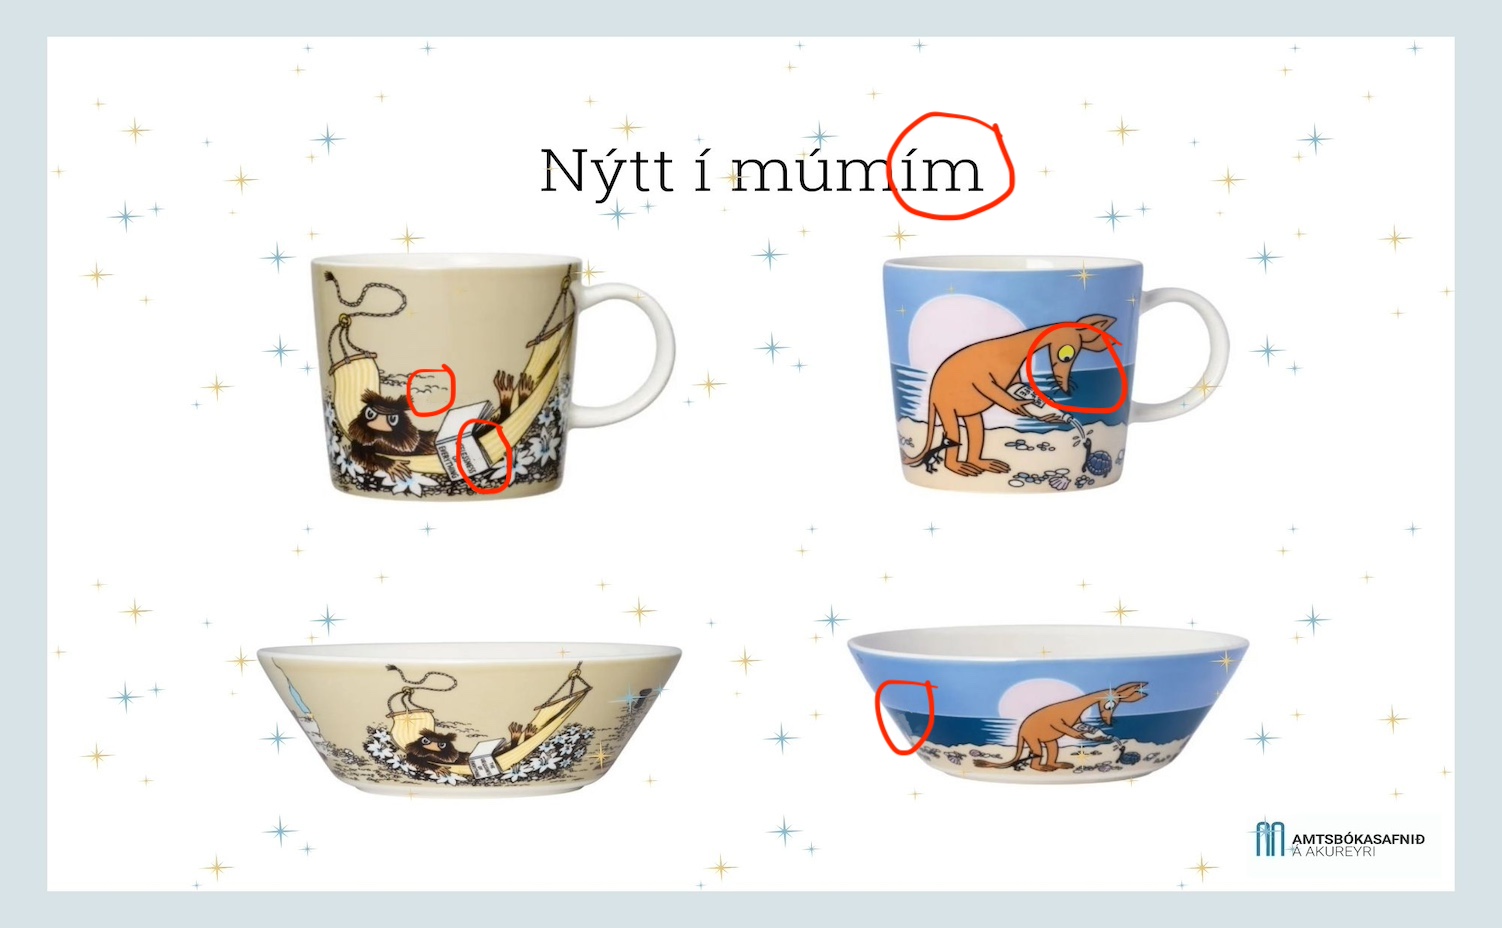 Moomin cups and moomin bowls